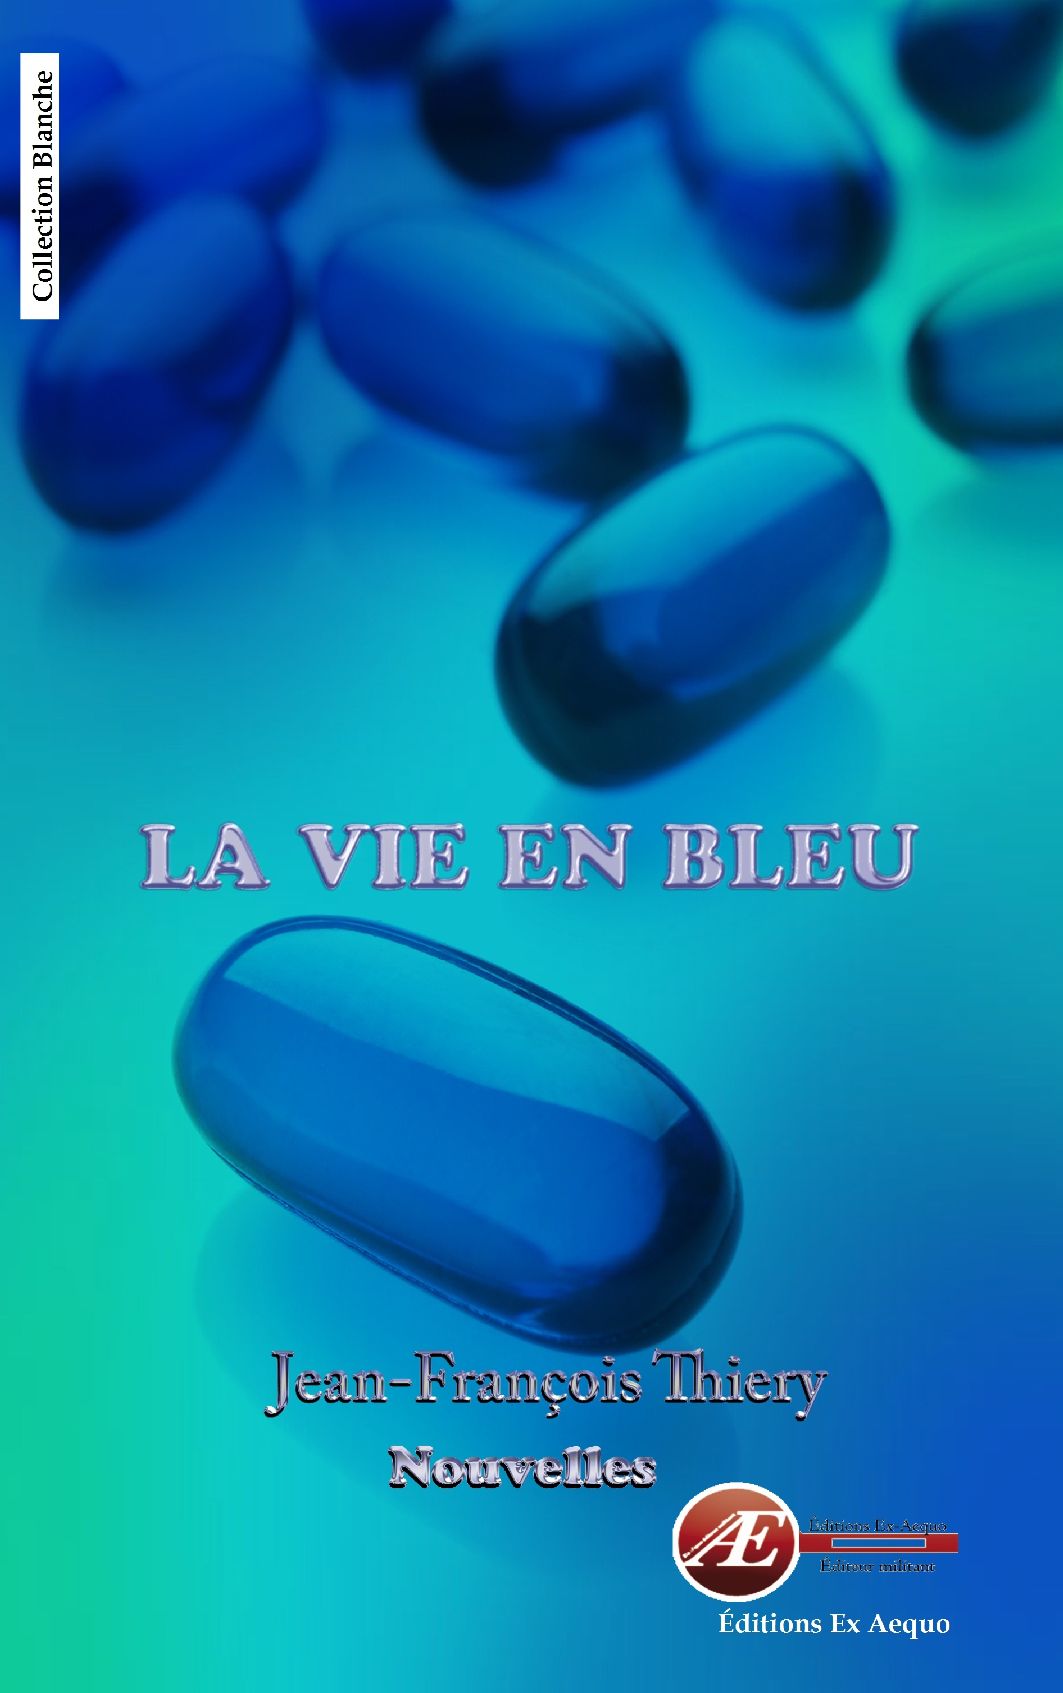 You are currently viewing La vie en bleu, de Jean-François Thiery